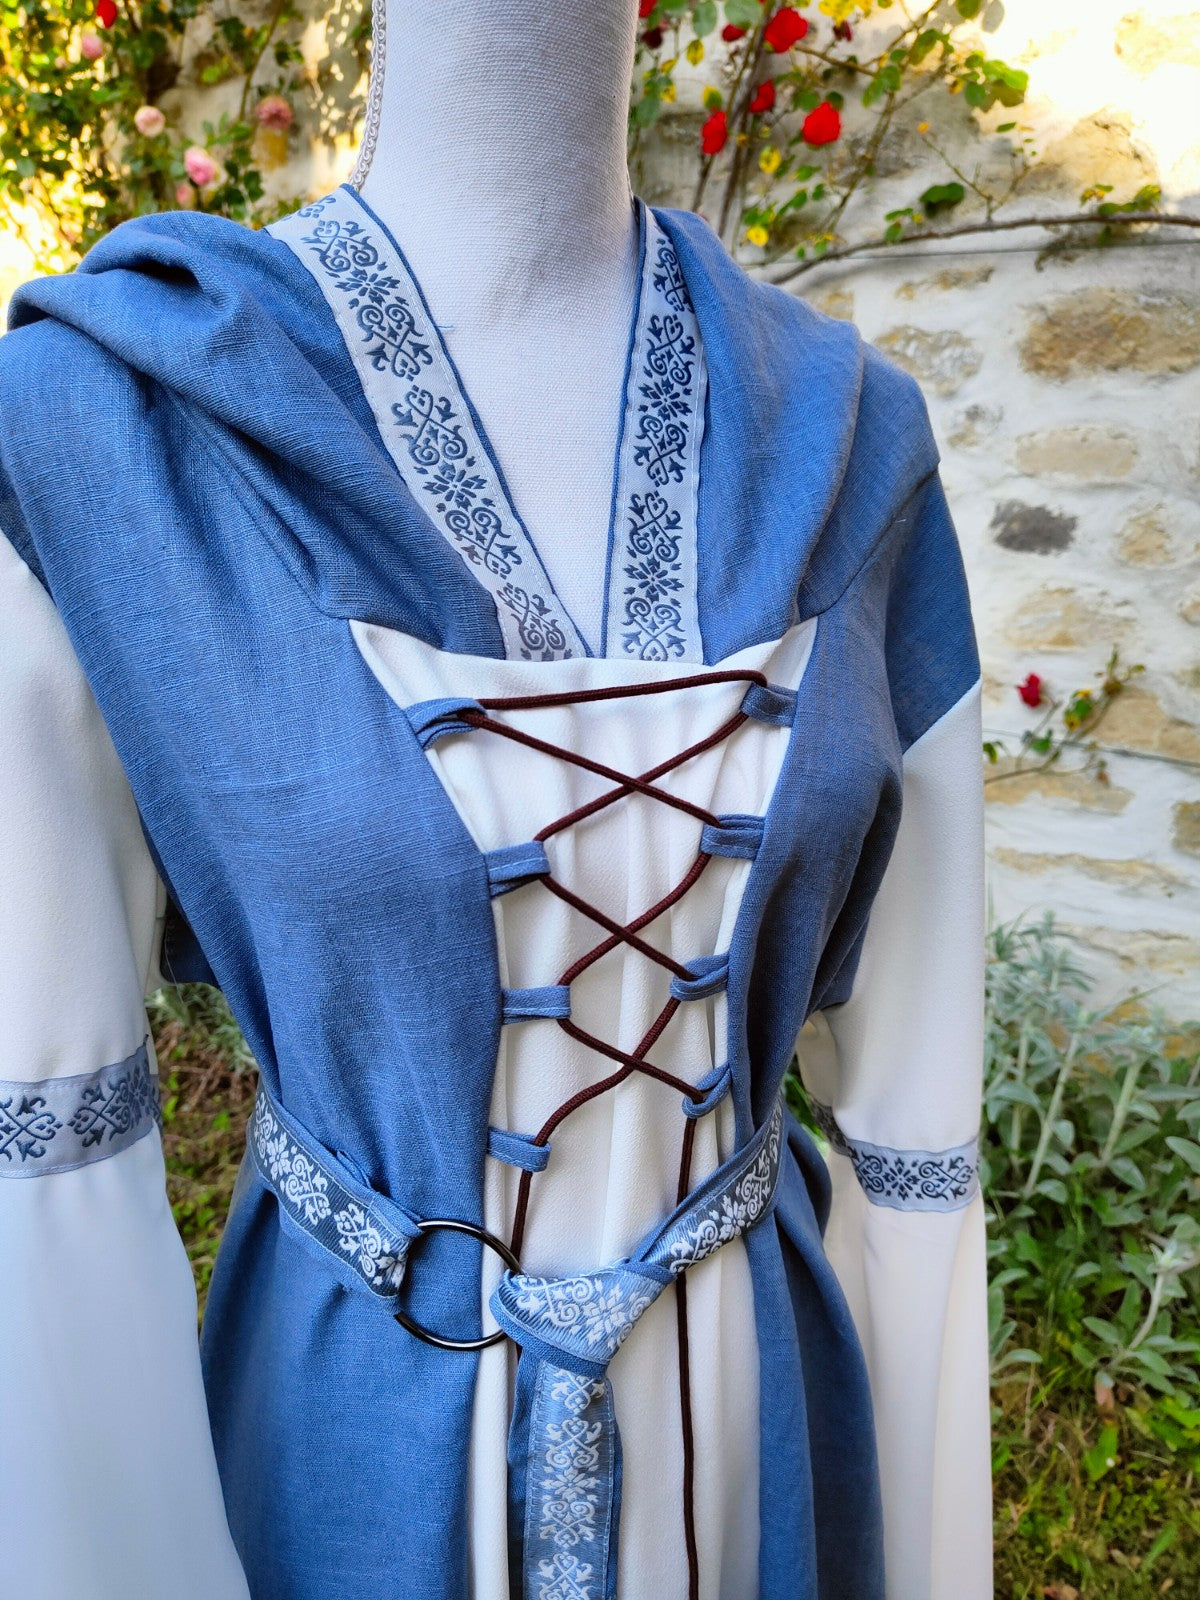 Robe médiévale ou elfique en lin bleu et jersey taille unique 38/48 !